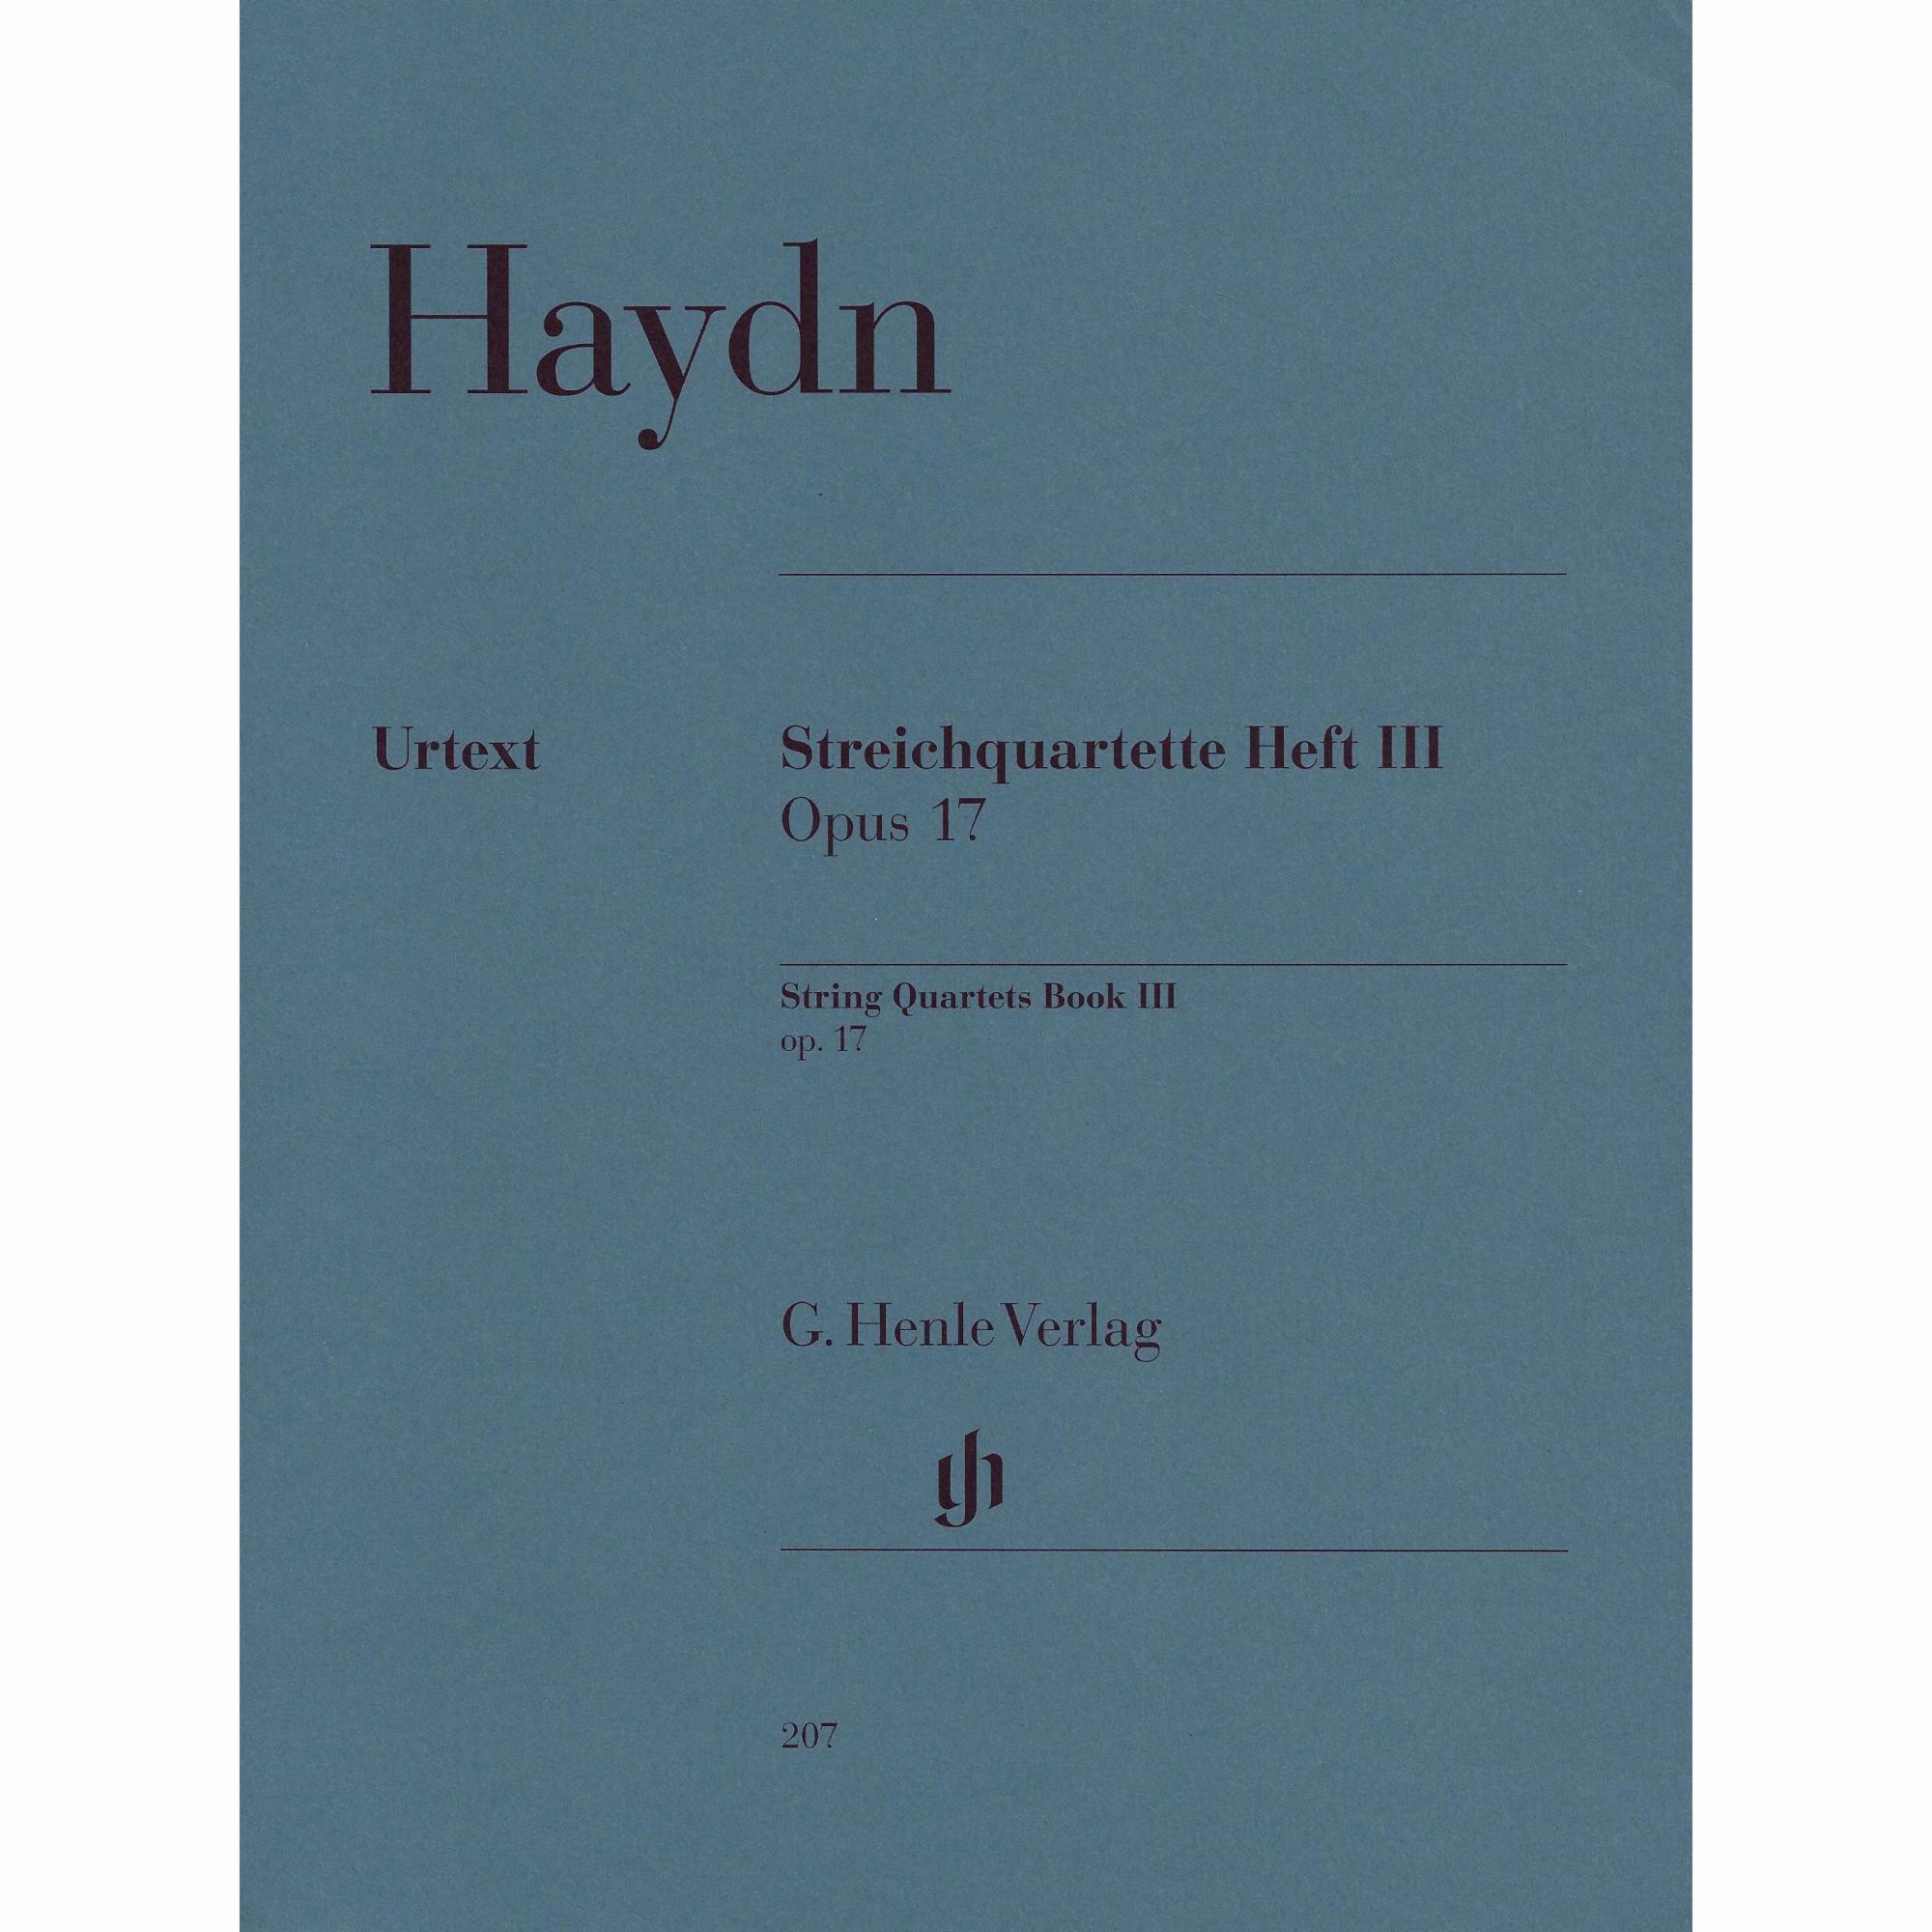 Haydn -- String Quartets, Book III